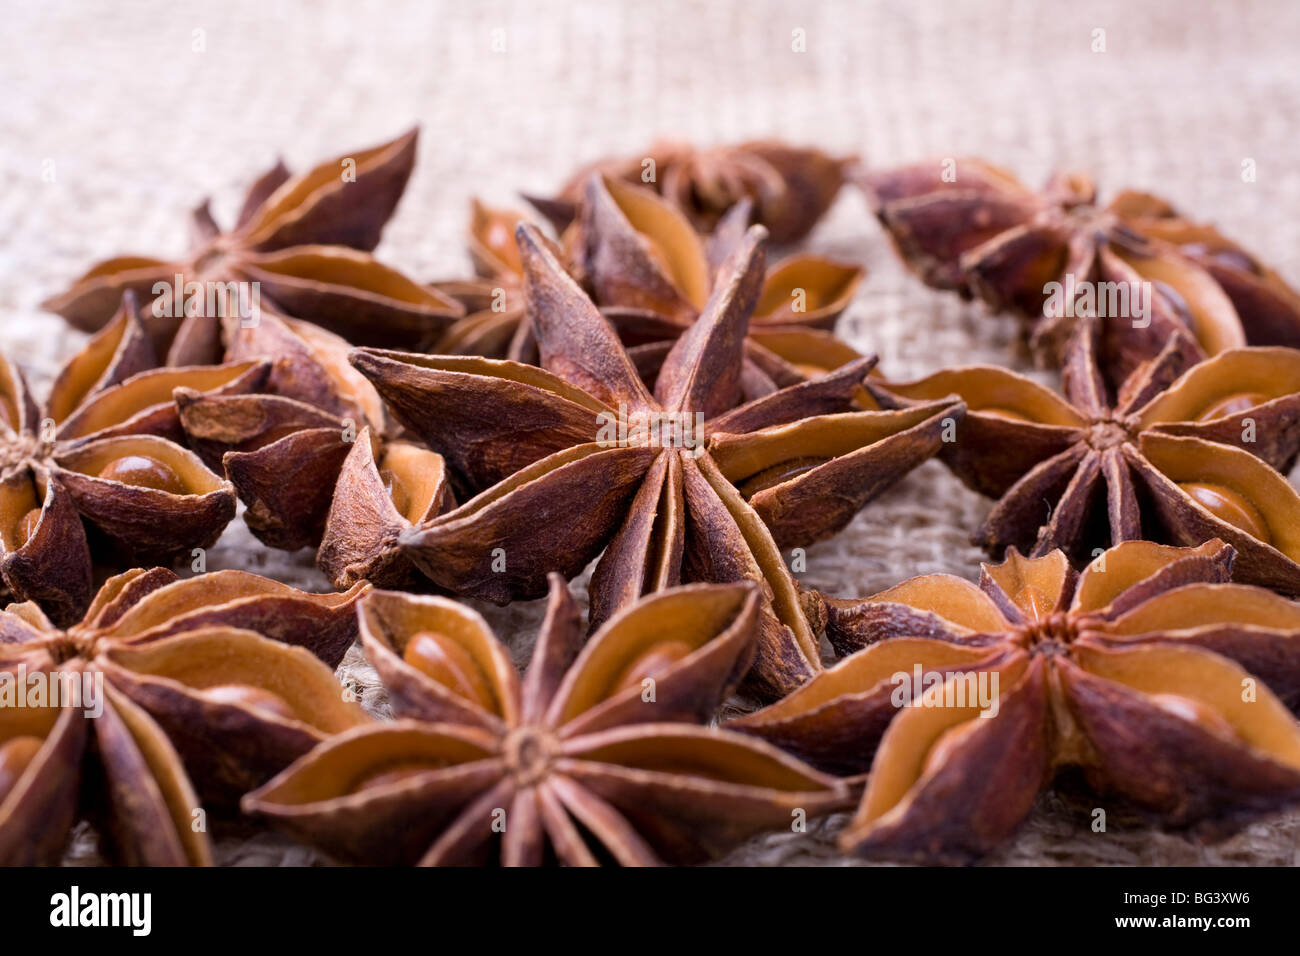 Immagine di alcuni anice stellato frutti e semi. Foto Stock